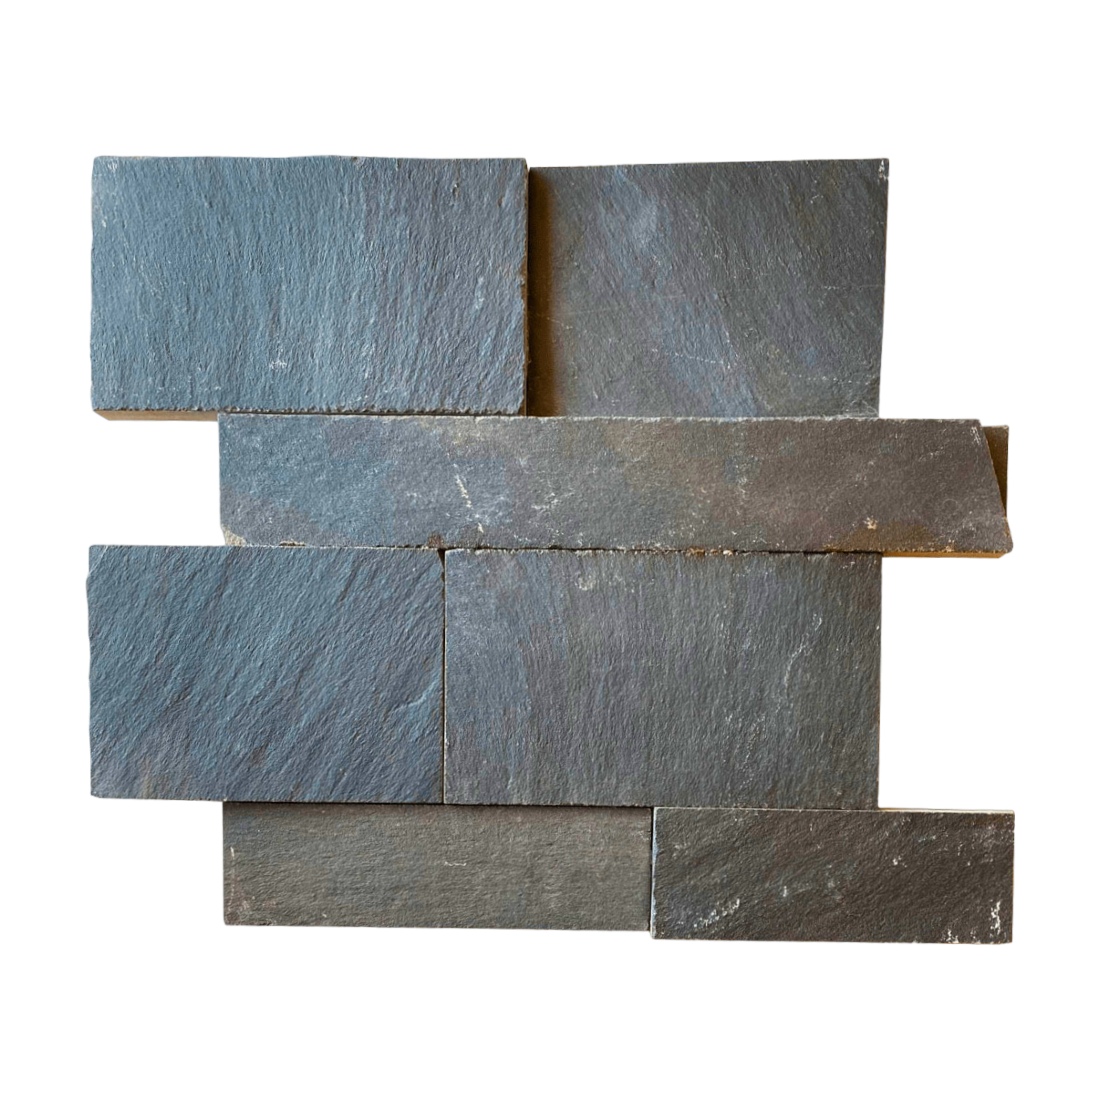 Mosaico Telado de Pedra Ferro Preto Union - 1 m²